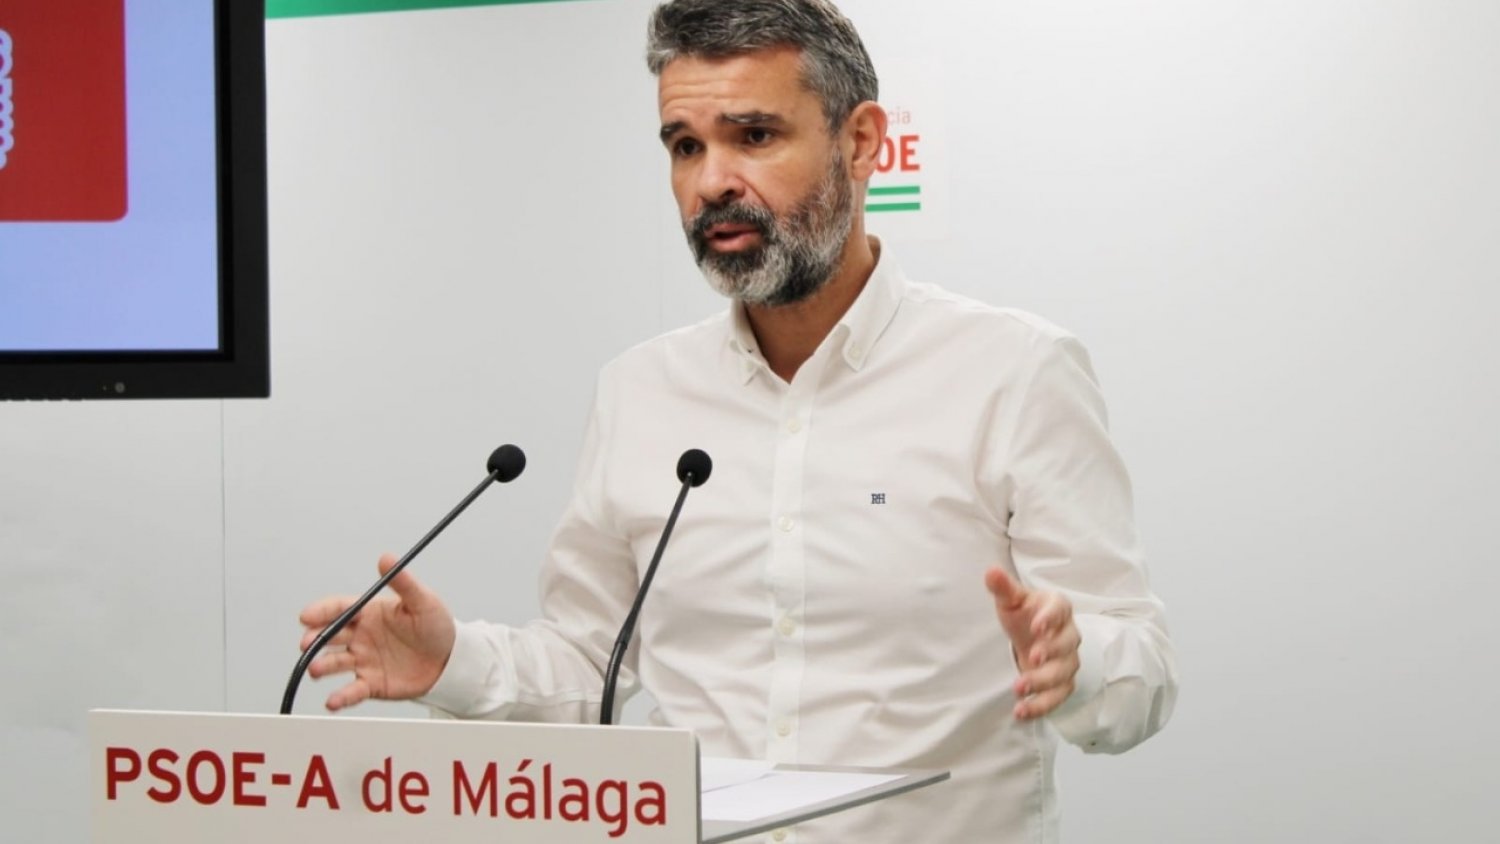 PSOE aprueba su comité electoral provincial con el objetivo de gobernar en municipios clave